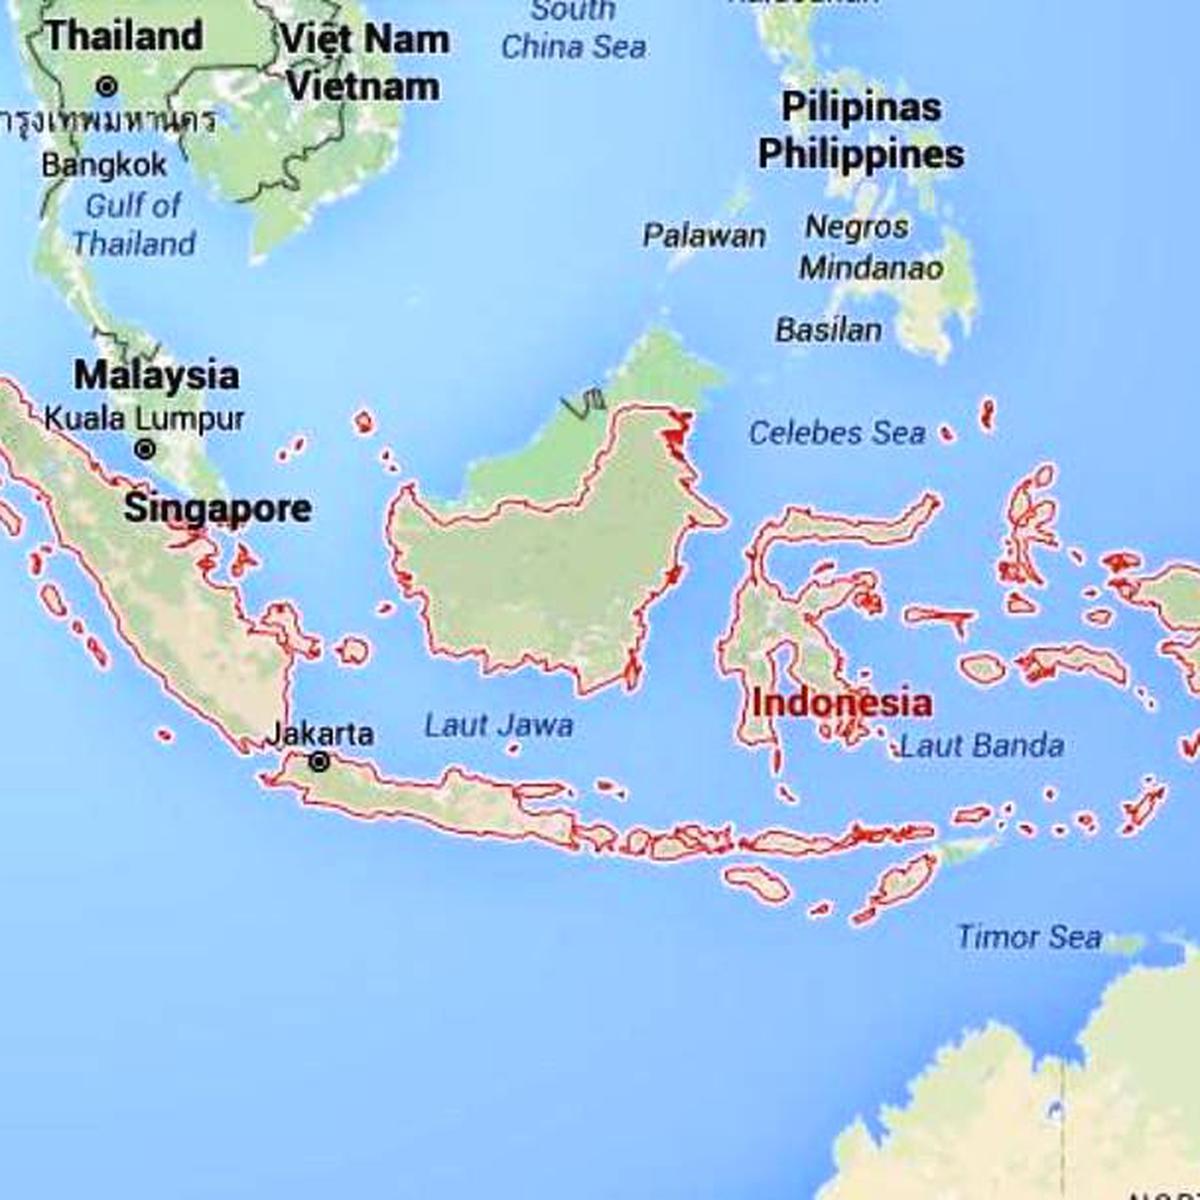 Negara indonesia adalah negara yang berdasarkan hukum”. pernyataan tersebut merupakan bunyi uud nri 